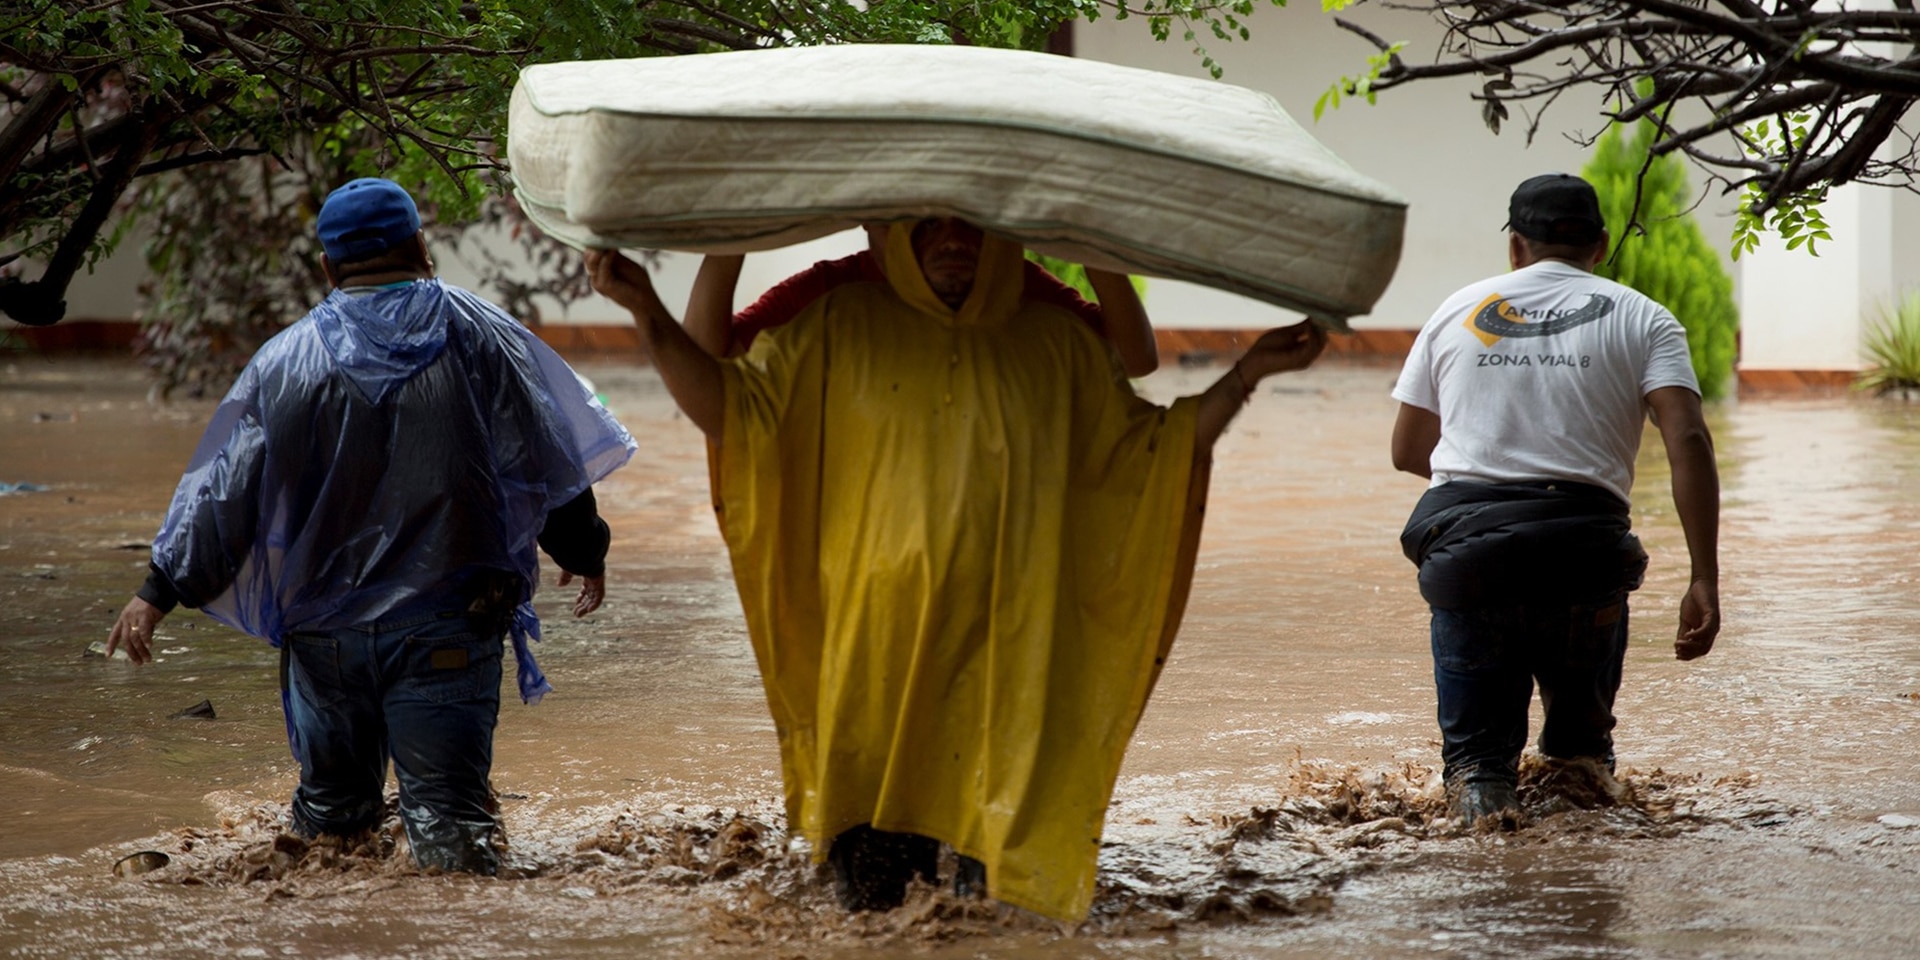 Zwei Personen tragen eine Matratze durch das Hochwasser. Zwei Mitglieder der Hilfskräfte begleiten sie dabei.